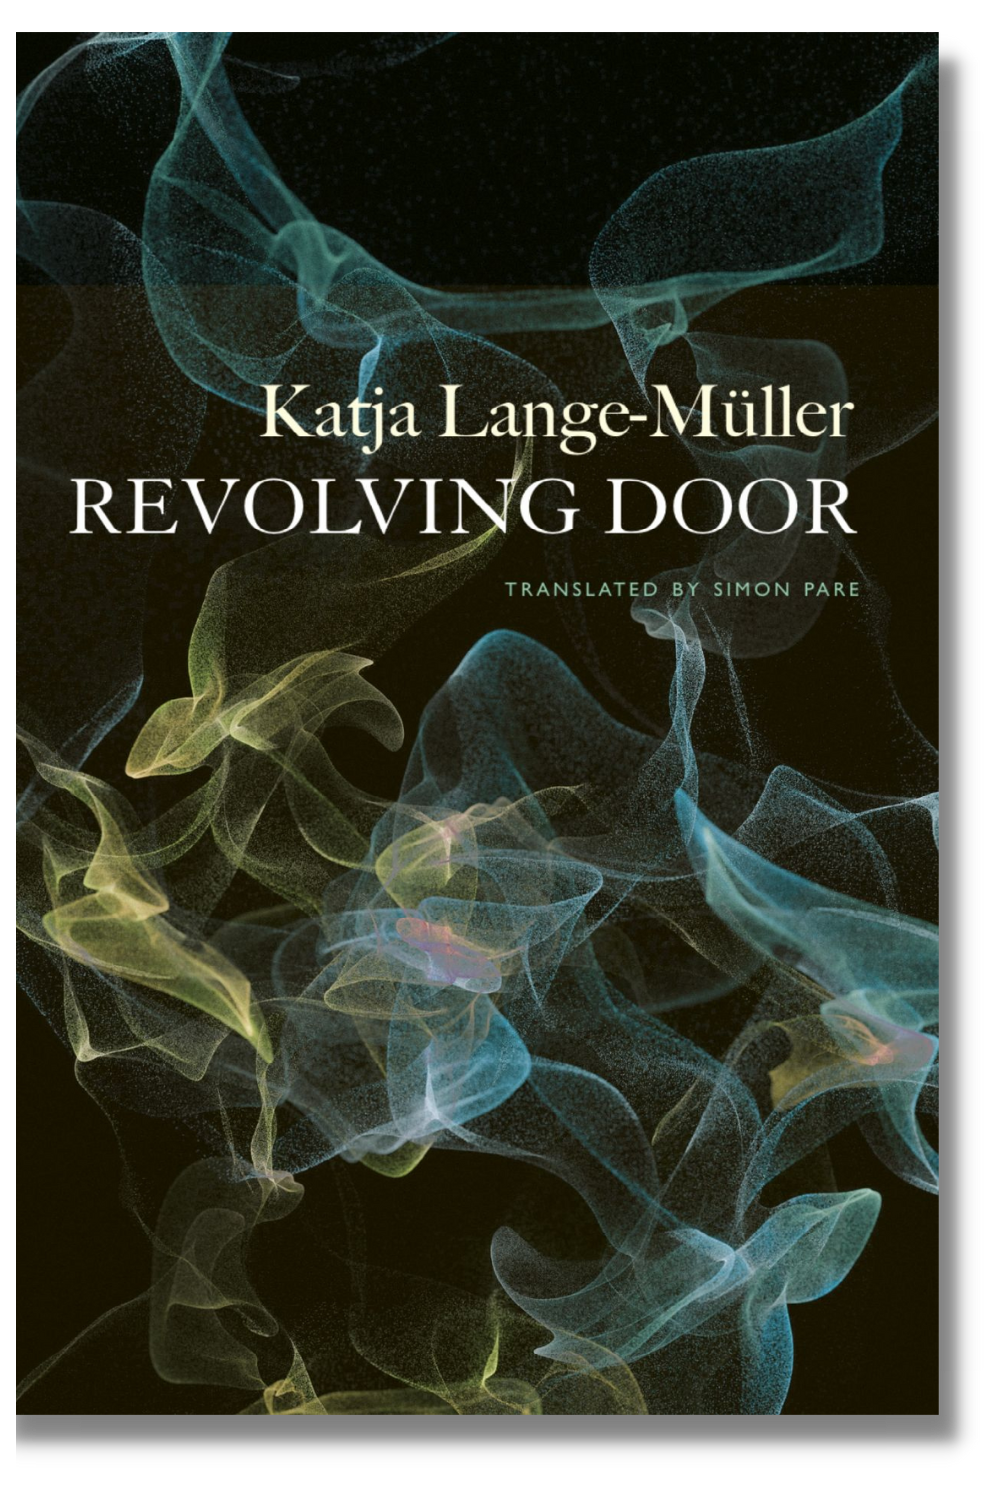 The cover of "Revolving Door"